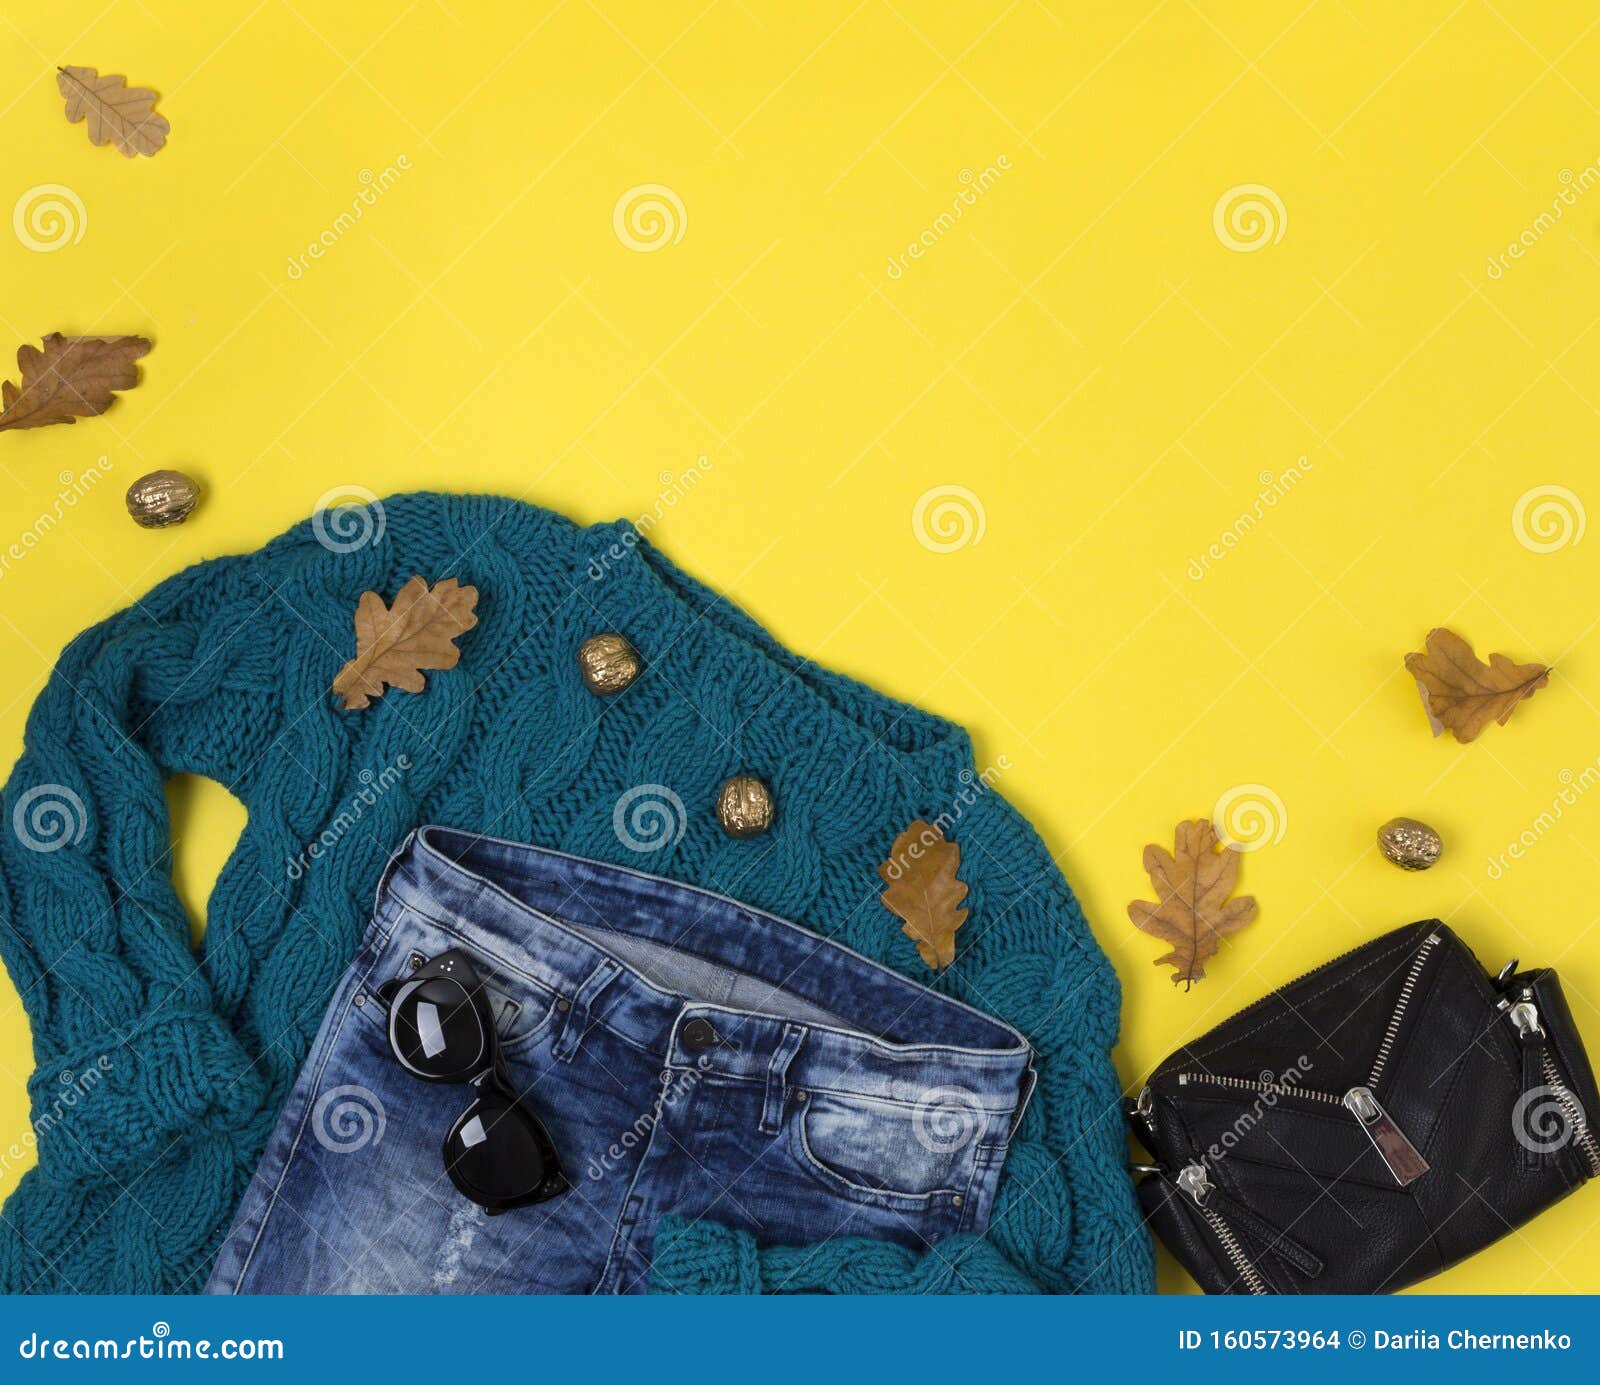 fuga de la prisión De alguna manera Pirata Suéter Color Turquesa, Jeans, Bolsa, Gafas De Sol Sobre Fondo Amarillo Foto  de archivo - Imagen de suéter, compras: 160573964